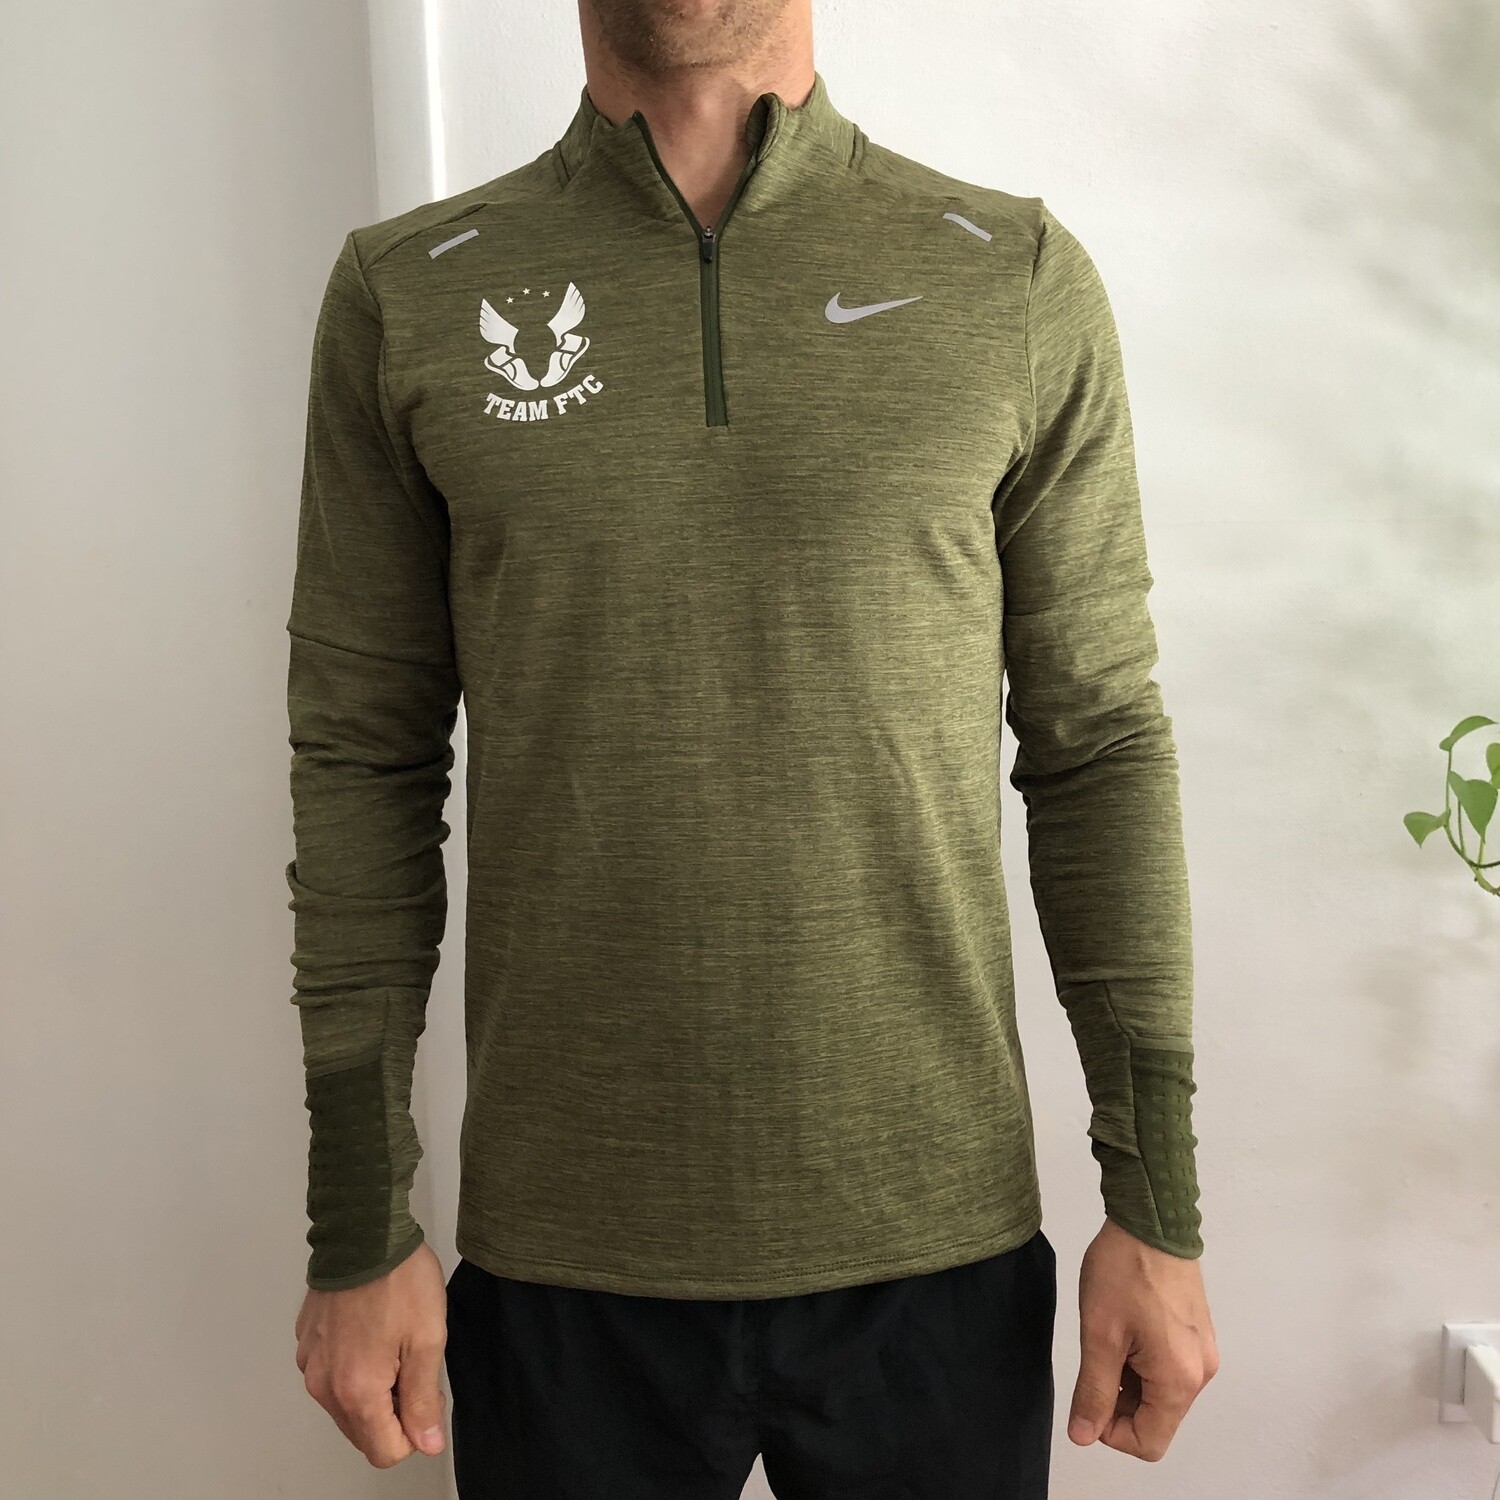 Men's Nike Therma-FIT Repel Half-Zip Top (green)